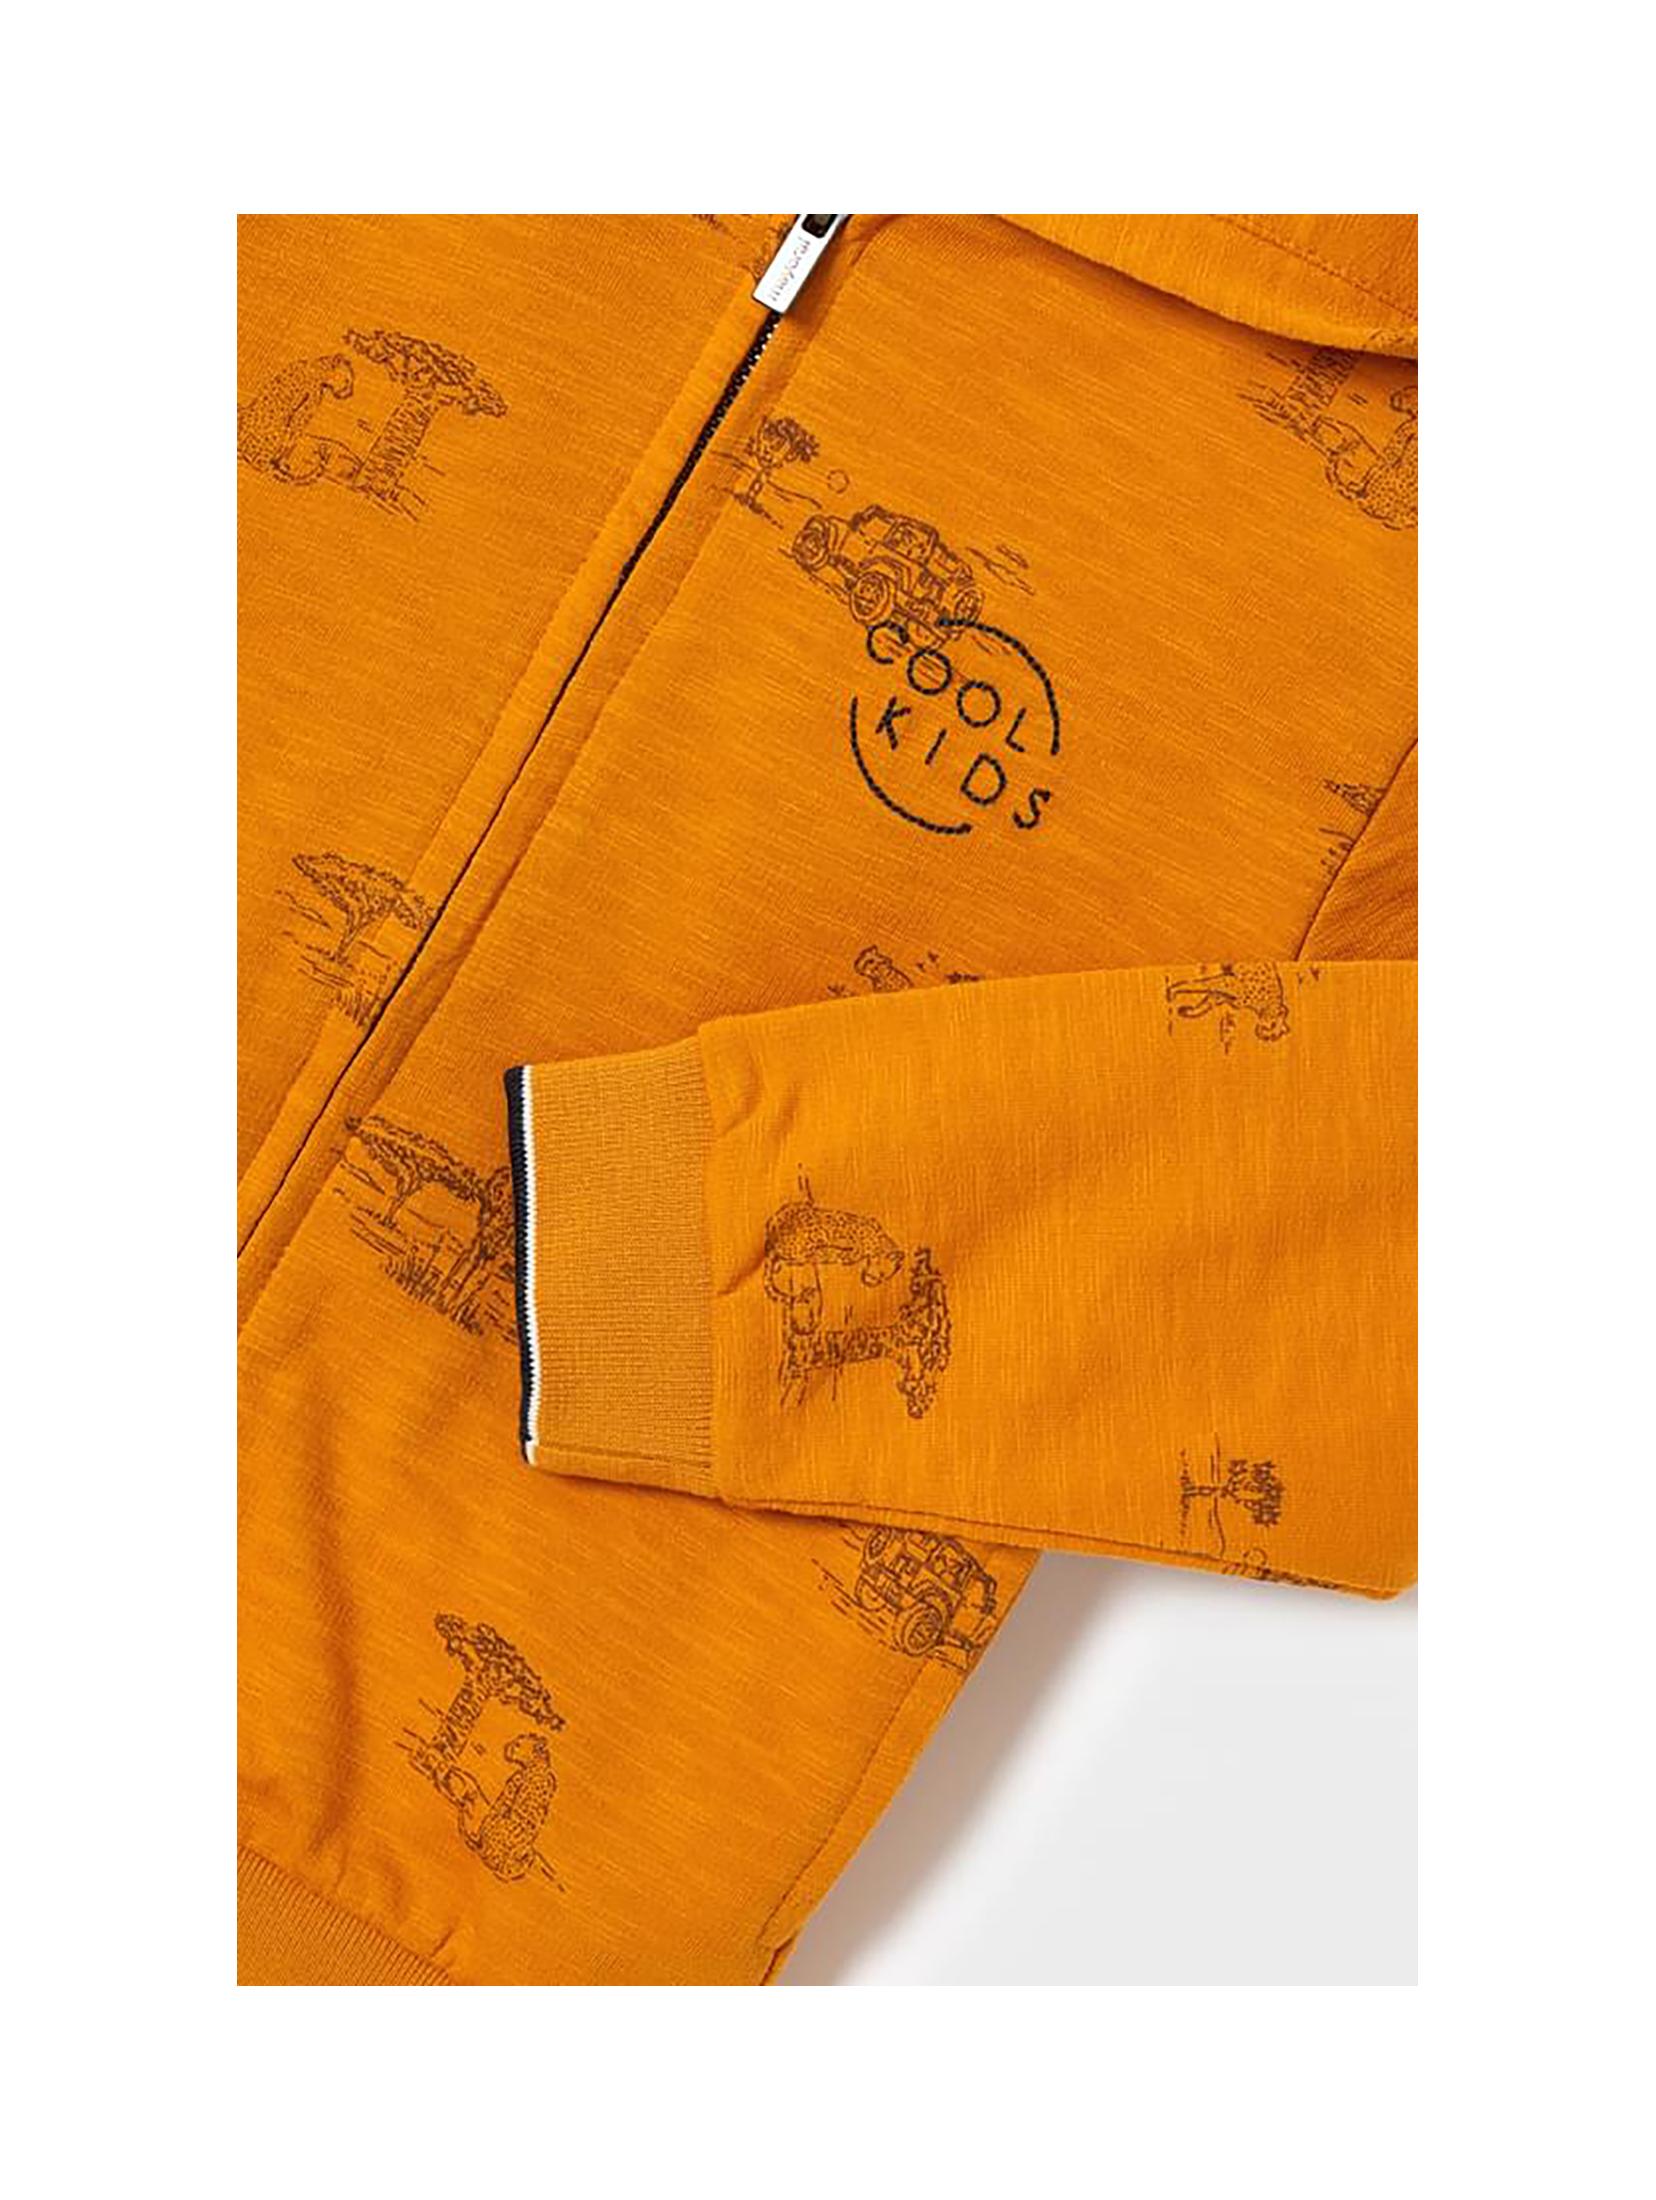 Bluza chłopięca z kapturem Mayoral - pomarańczowa